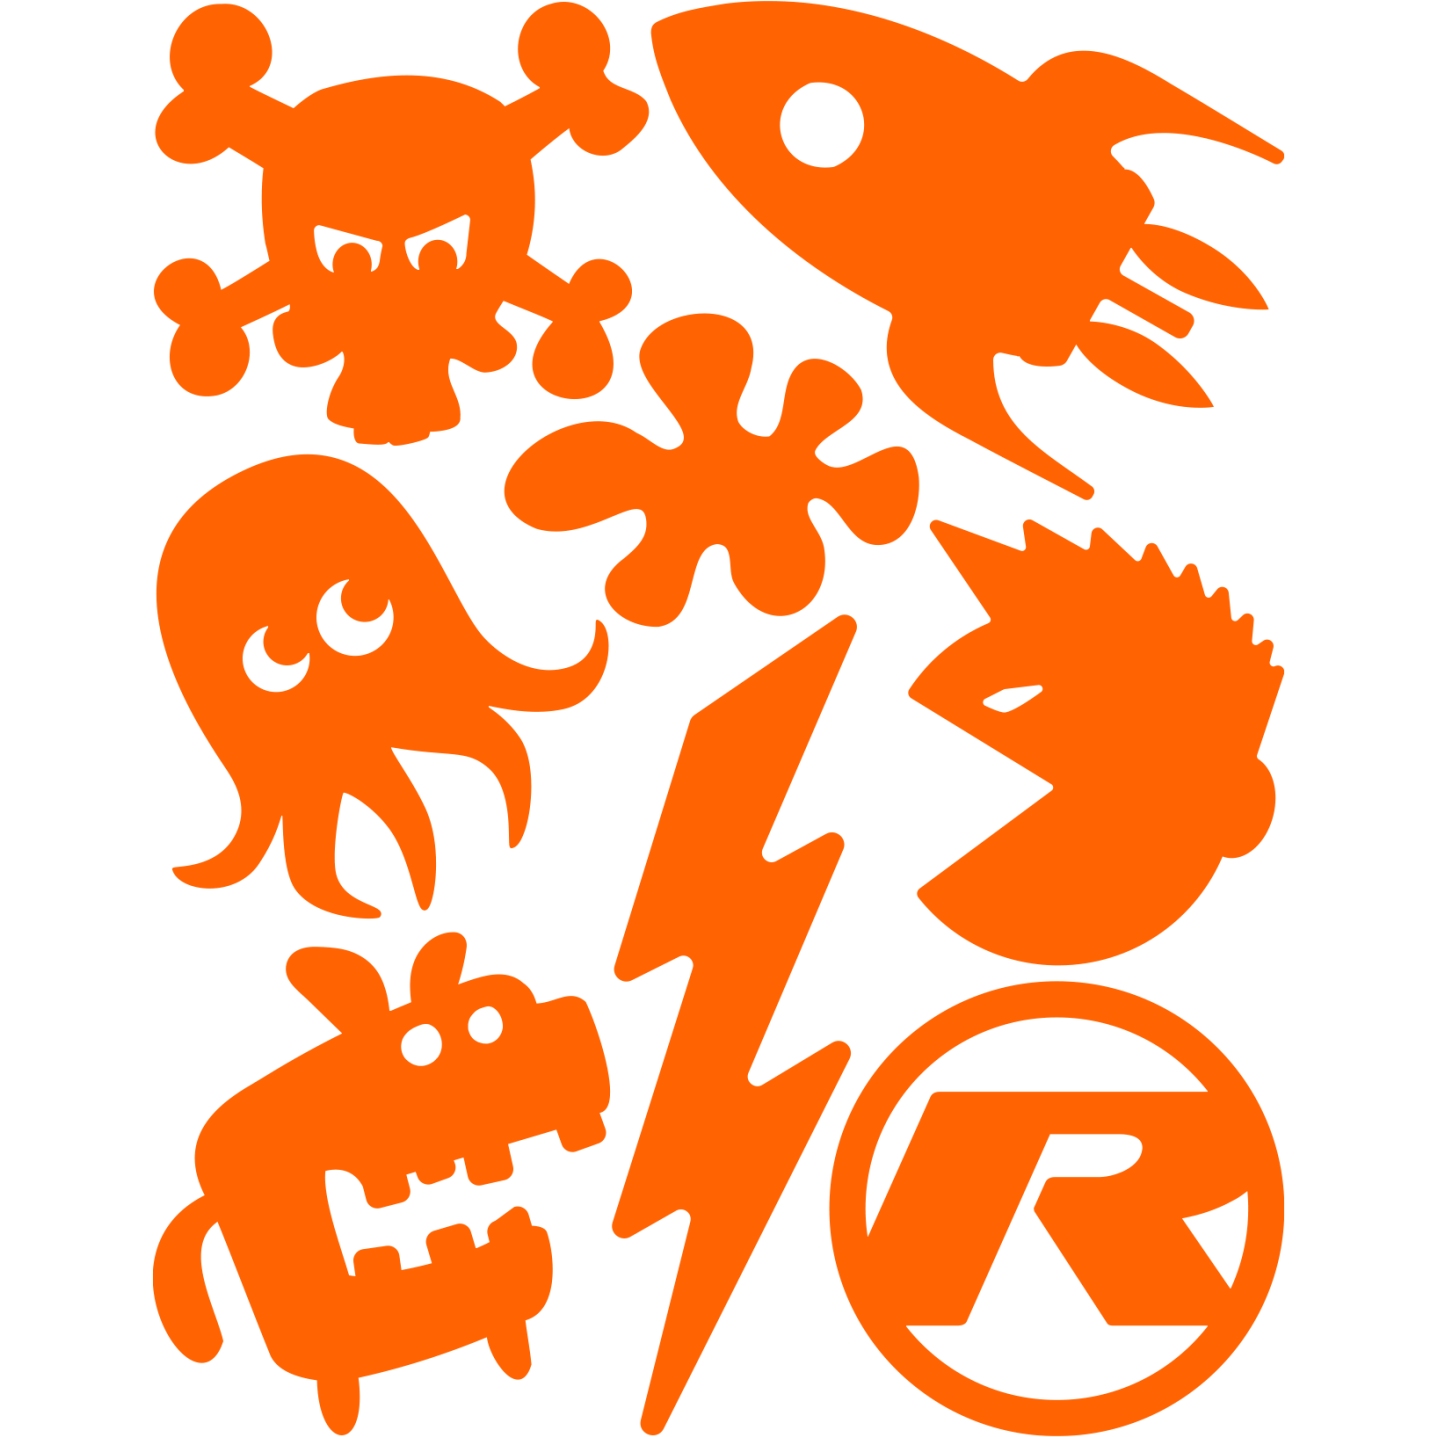 Produktbild von rie:sel design re:flex kids - Reflektierende Rahmensticker - rascal orange